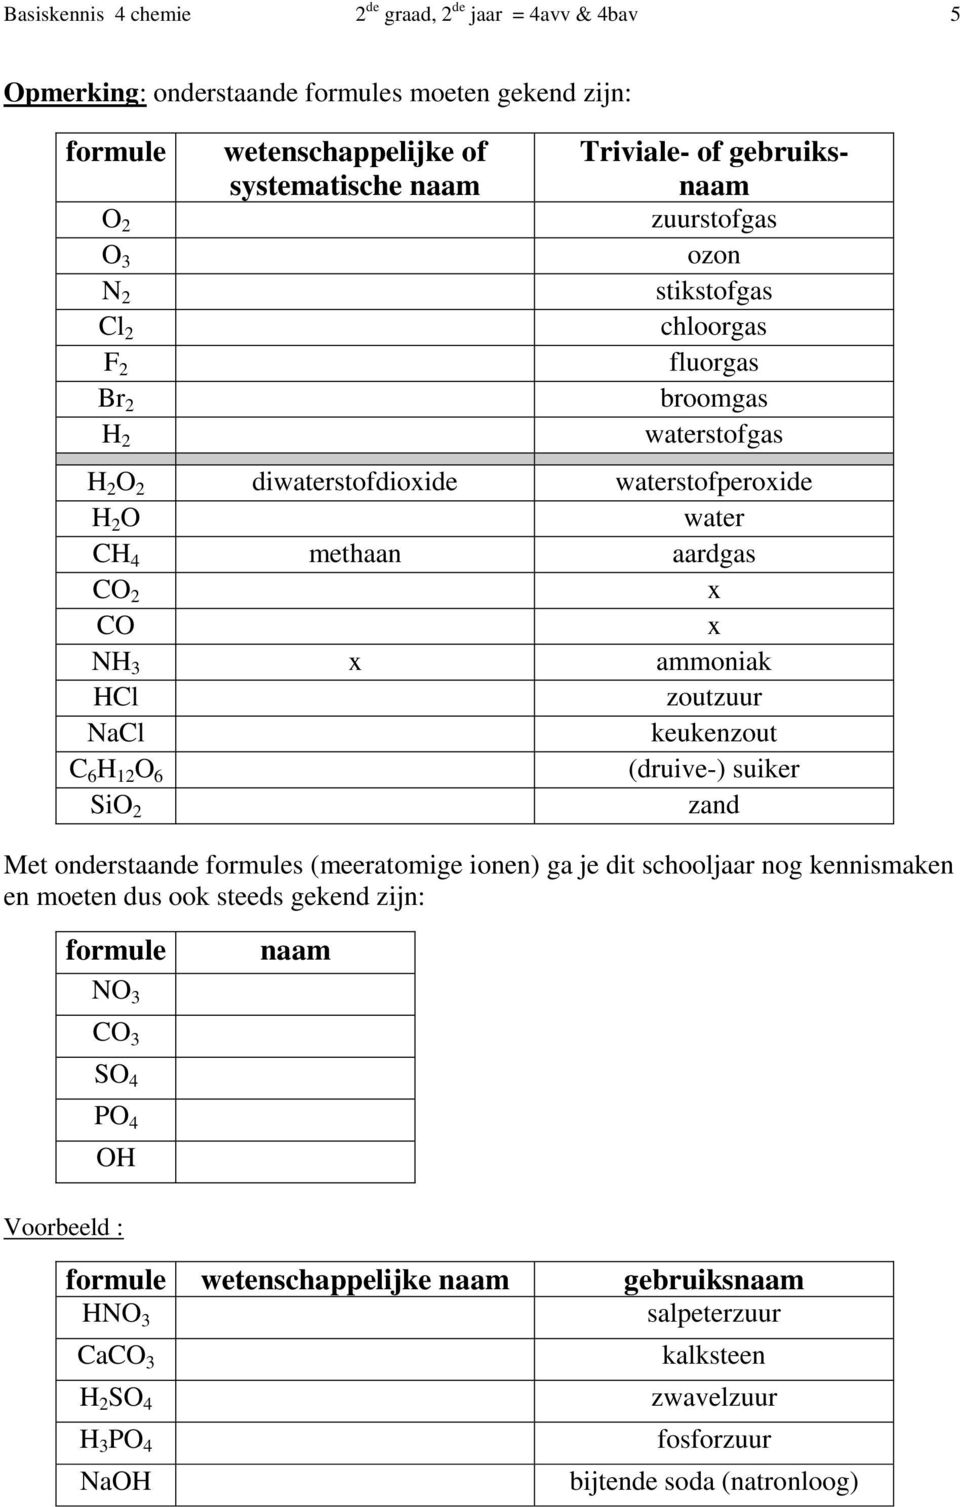 ammoniak HCl zoutzuur NaCl keukenzout C 6 H 12 O 6 (druive-) suiker SiO 2 zand Met onderstaande formules (meeratomige ionen) ga je dit schooljaar nog kennismaken en moeten dus ook steeds gekend